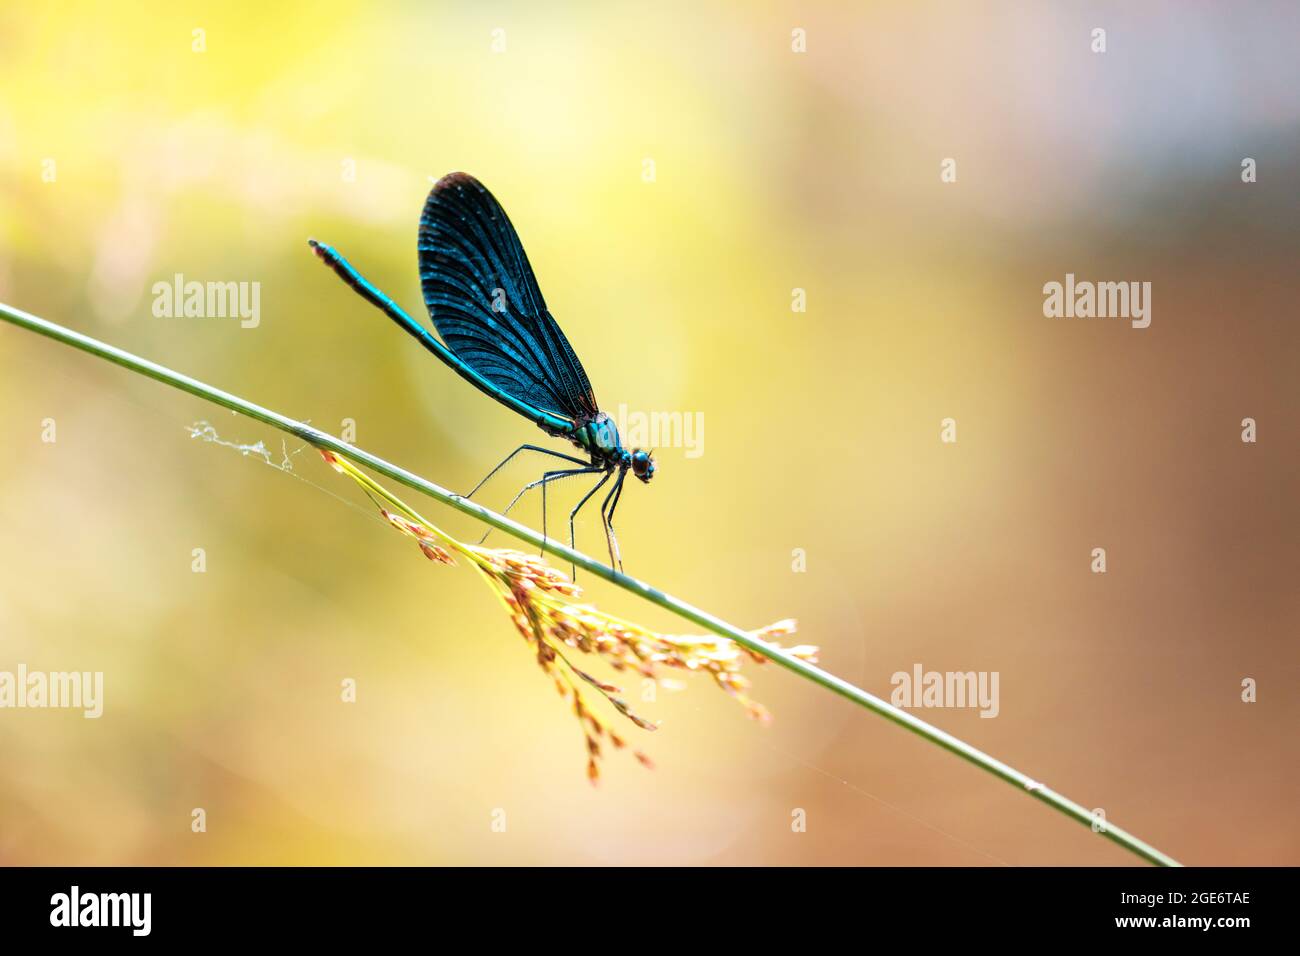 Belle scène de nature avec prise de libellule sur la branche verte. Photographie macro Banque D'Images